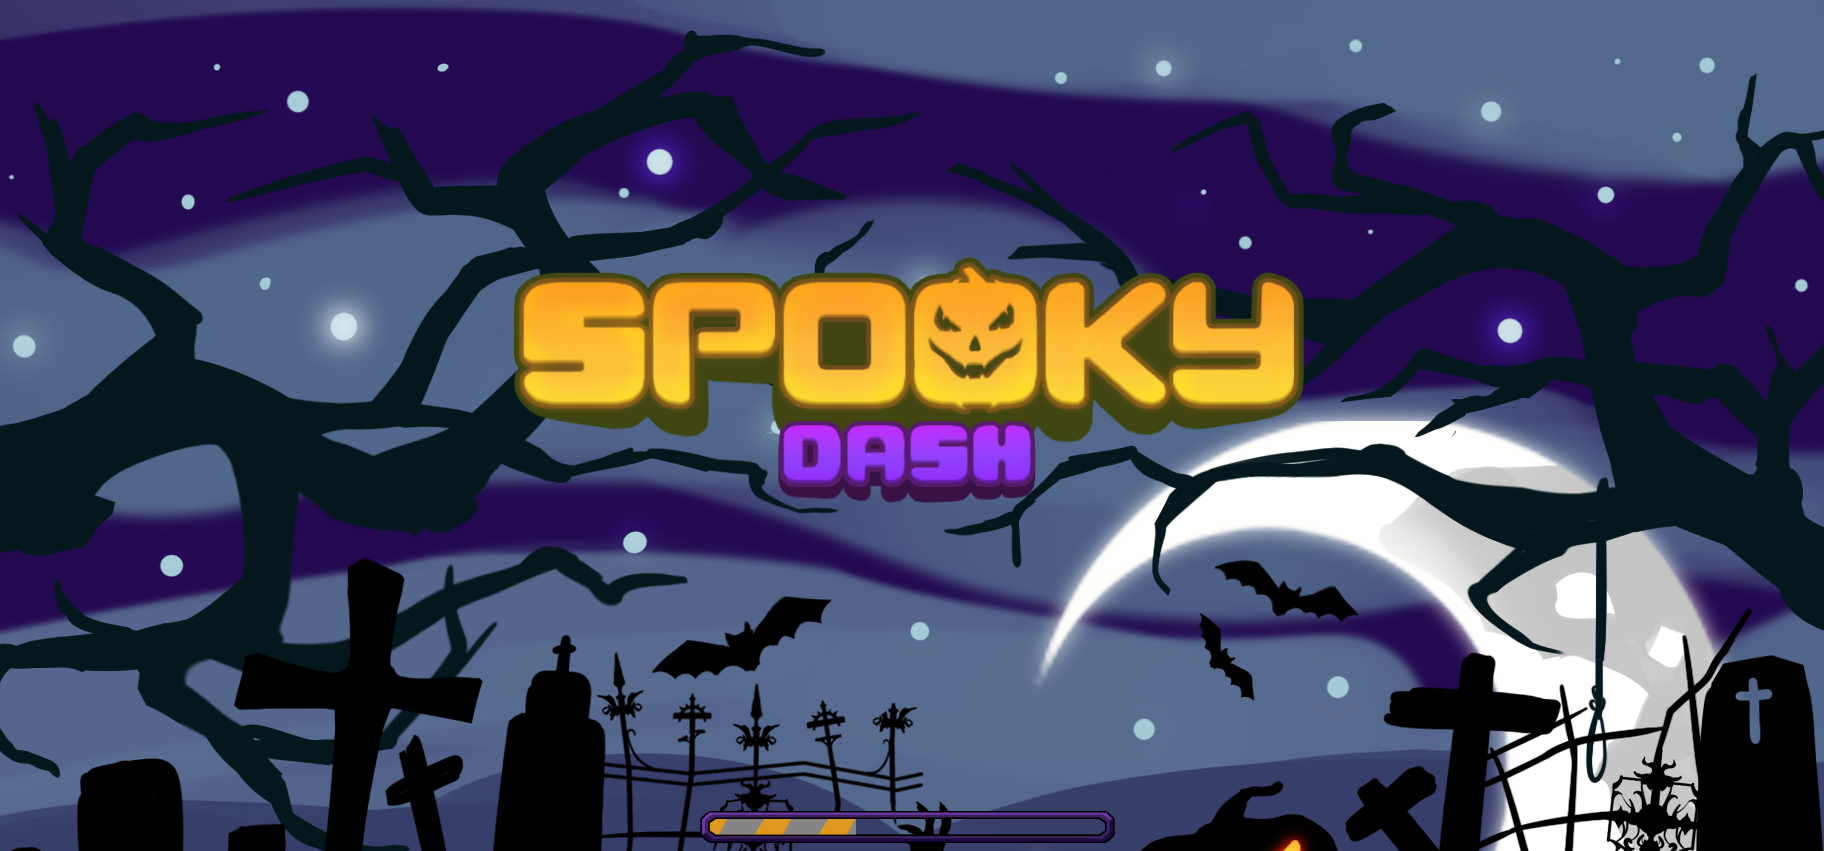 Spooky Dash